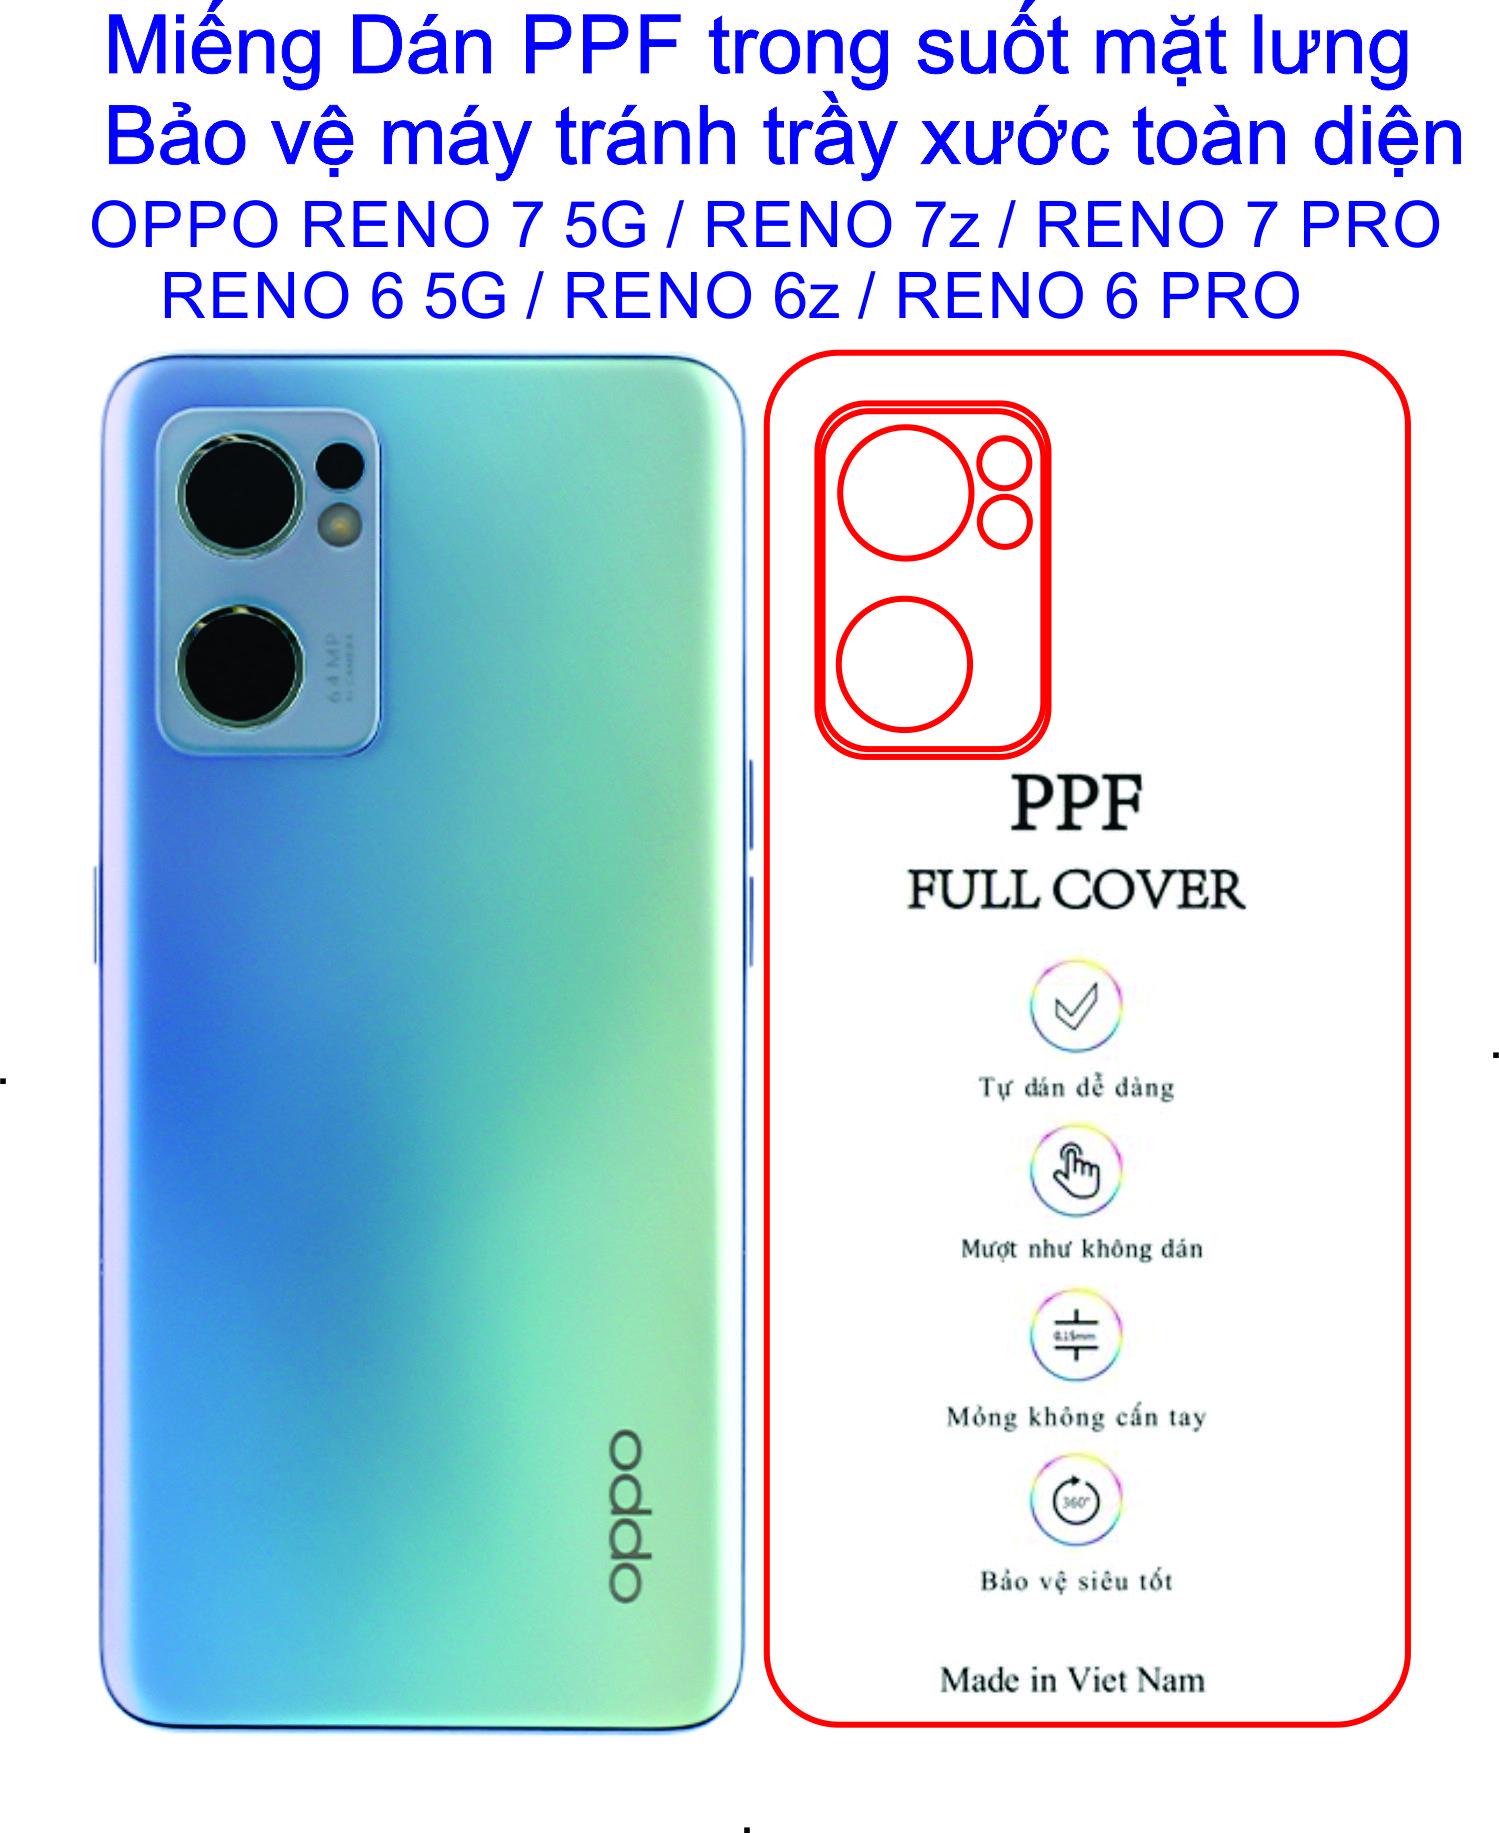 Dán PPF mặt lưng dành cho OPPO Reno 7 5G / Reno 7z 5G/ reno 6 5G /reno 6z /reno 5 /reno 4 /reno 4pro Bảo vệ máy chống trầy xước